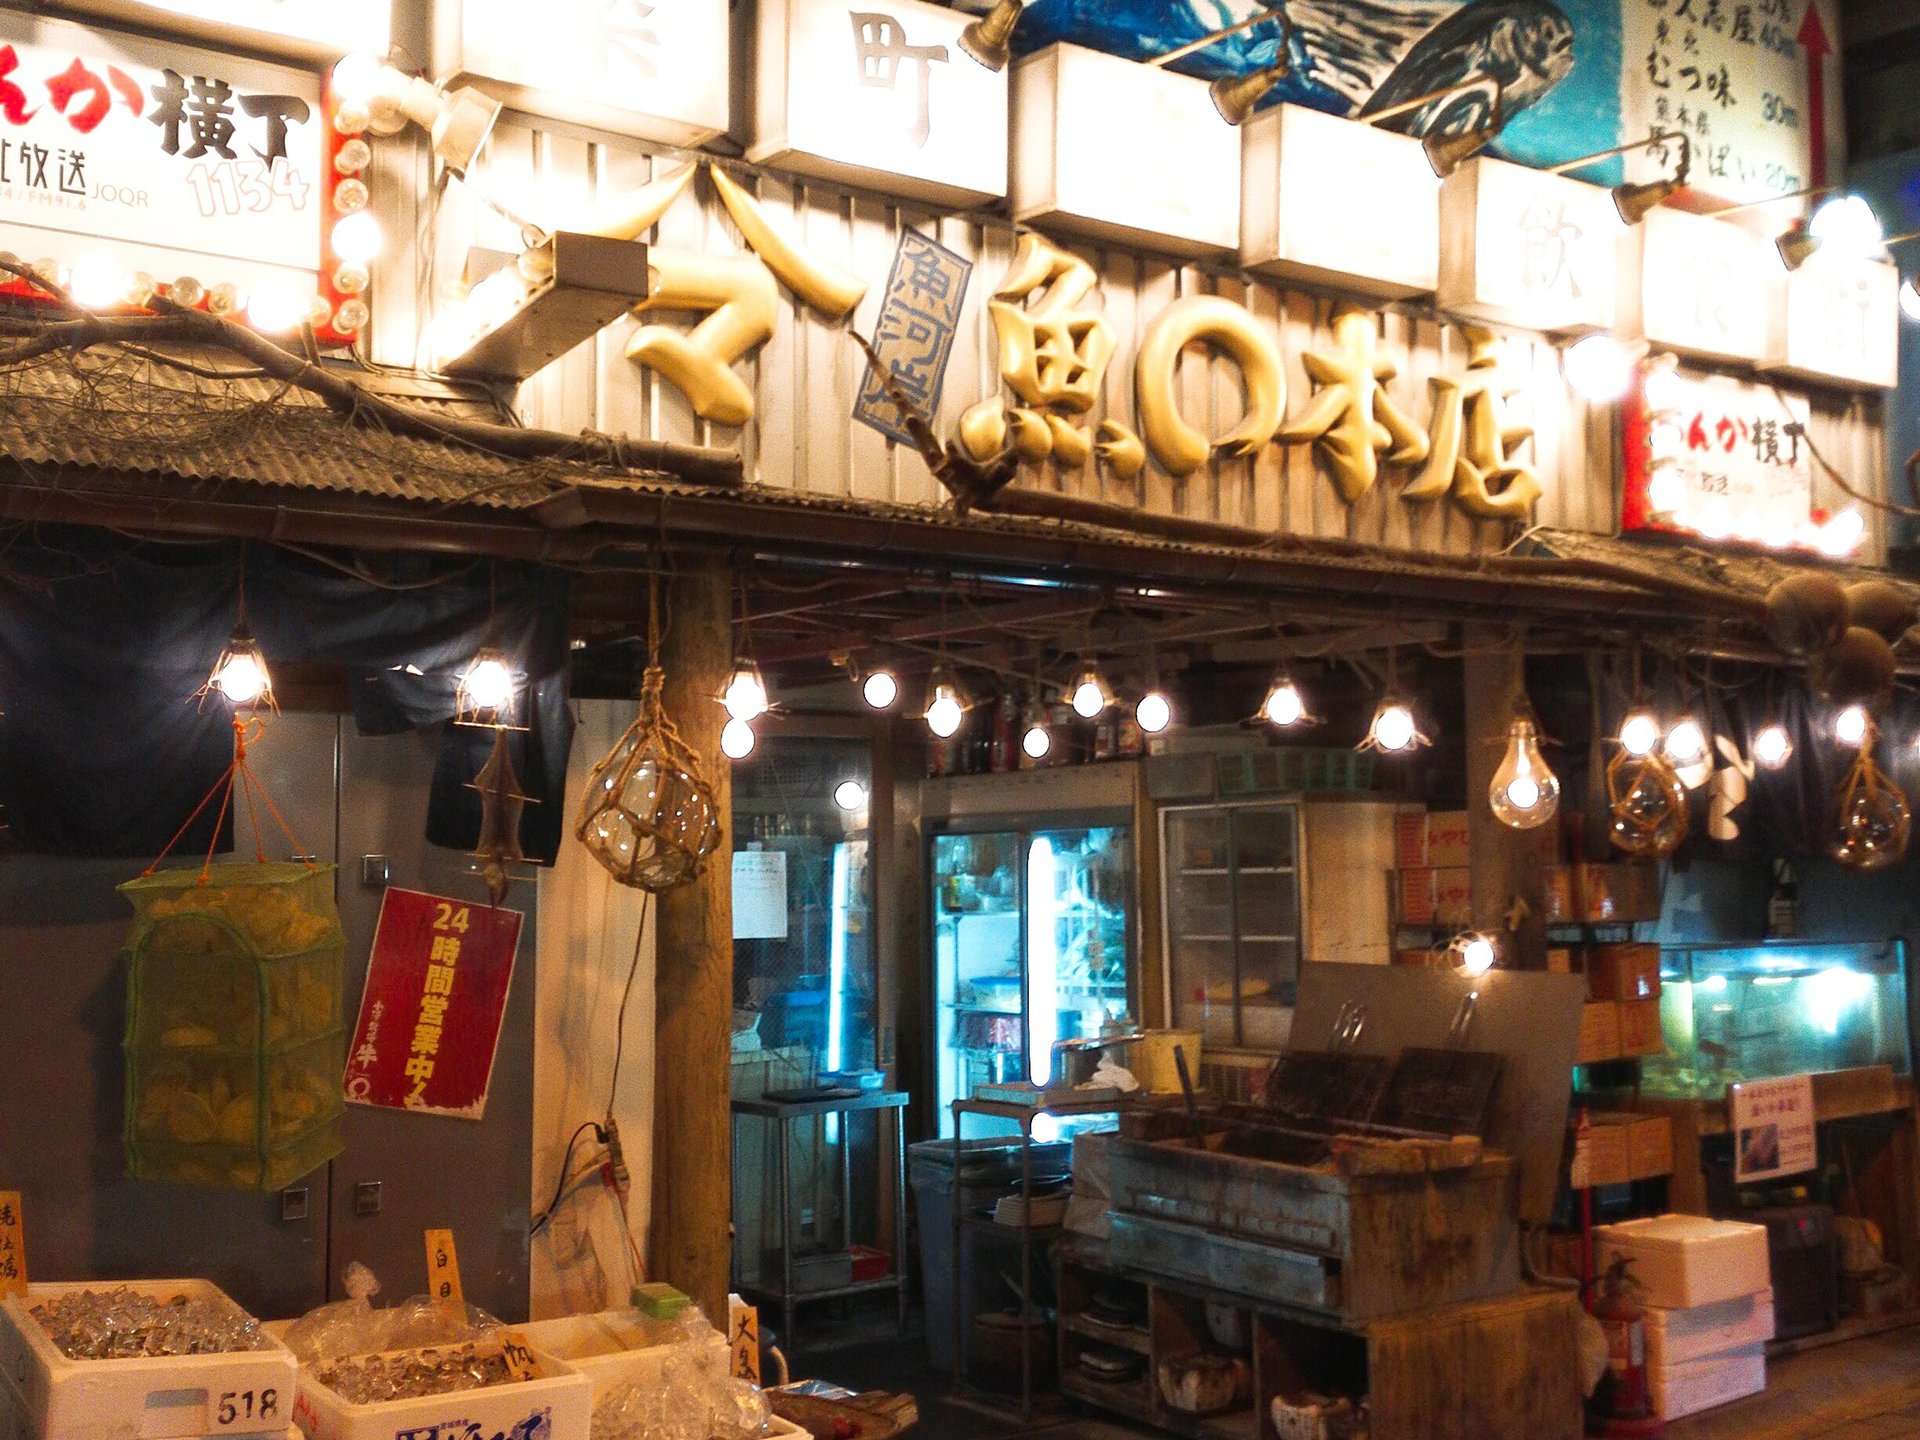 有楽町のガード下でお昼から呑める魚介類居酒屋「魚〇本店」